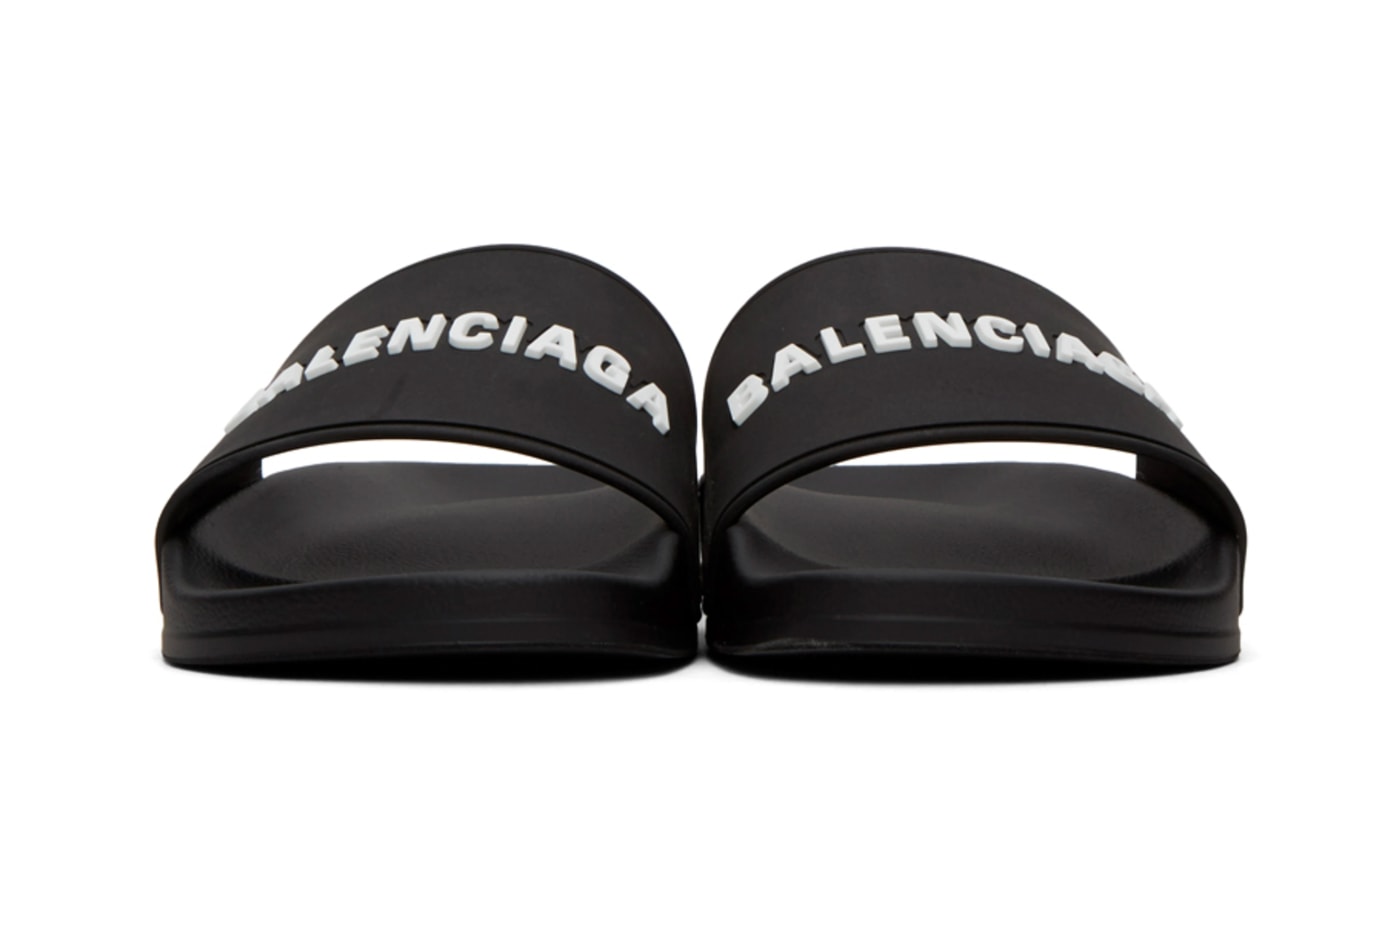 Balenciaga 推出全新黑白兩色泳池用拖鞋